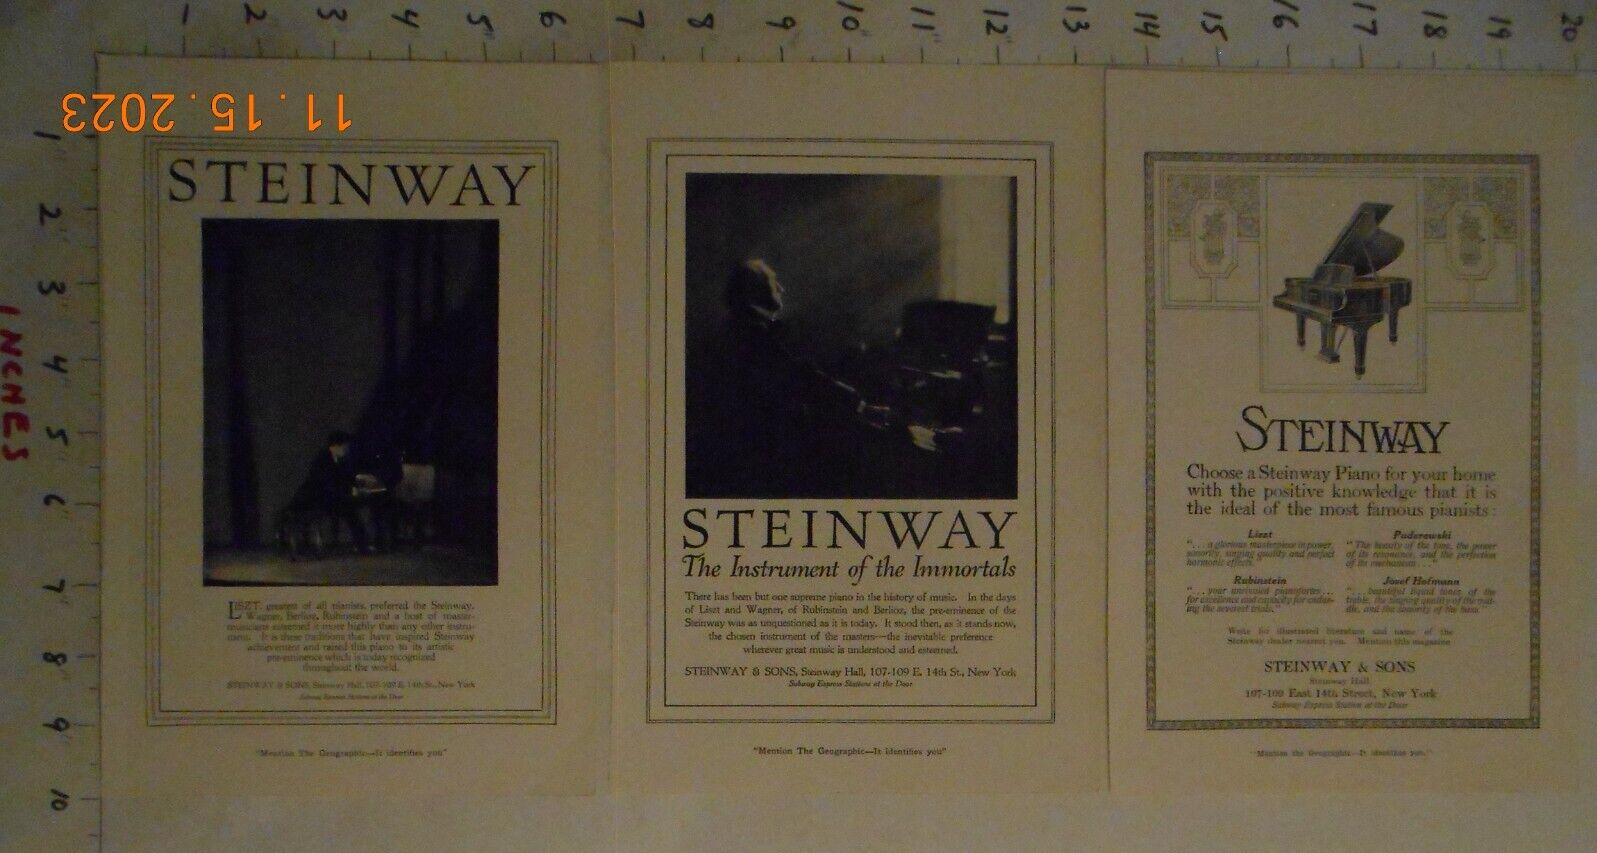 1914 1919 1920 Steinway & Sons Piano AD pianist Franz Liszt Rubenstein Hofmann